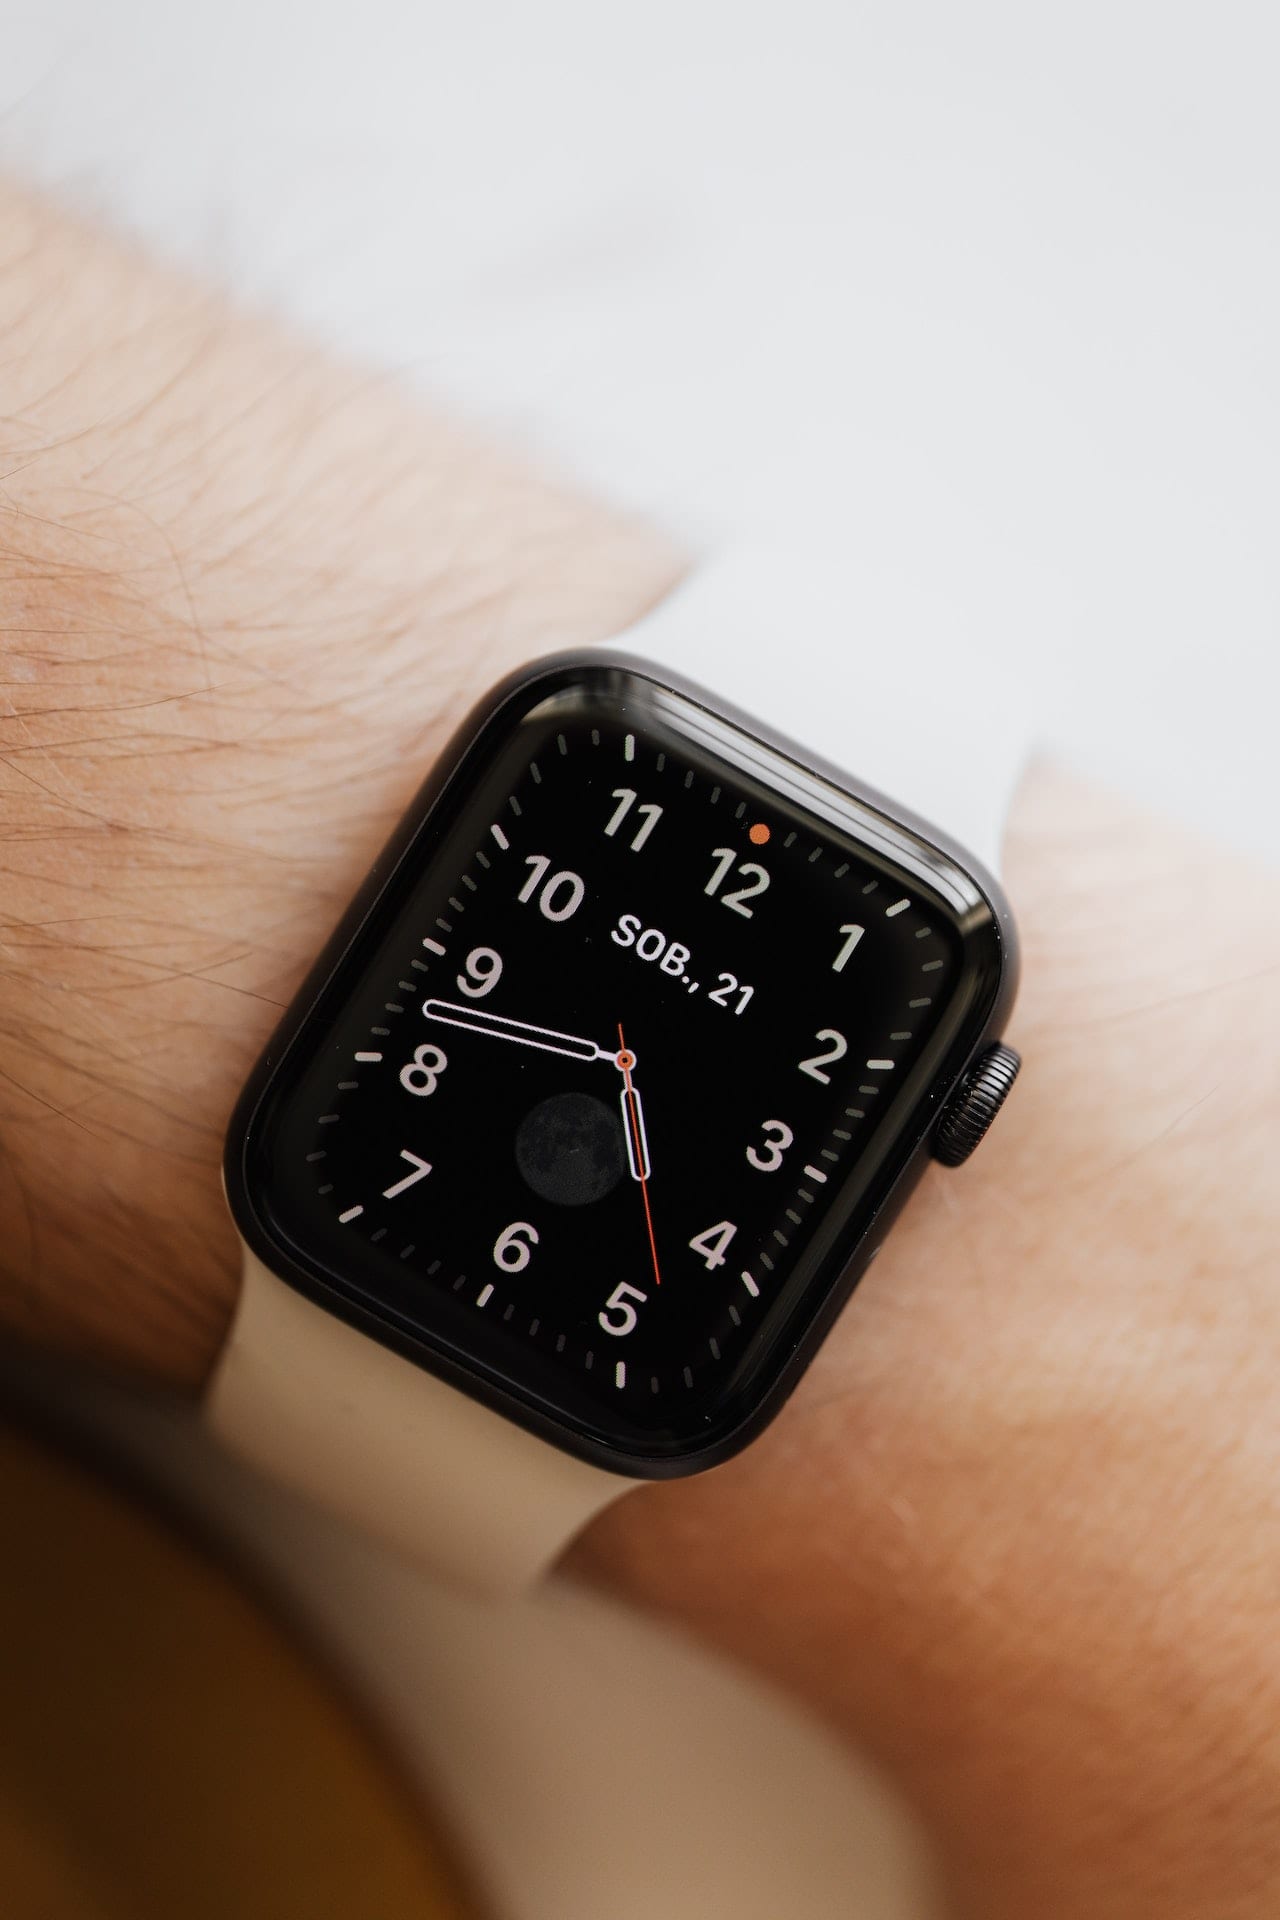 Jak maksymalnie wykorzystać Apple Watch do monitorowania swojego zdrowia i kondycji fizycznej?